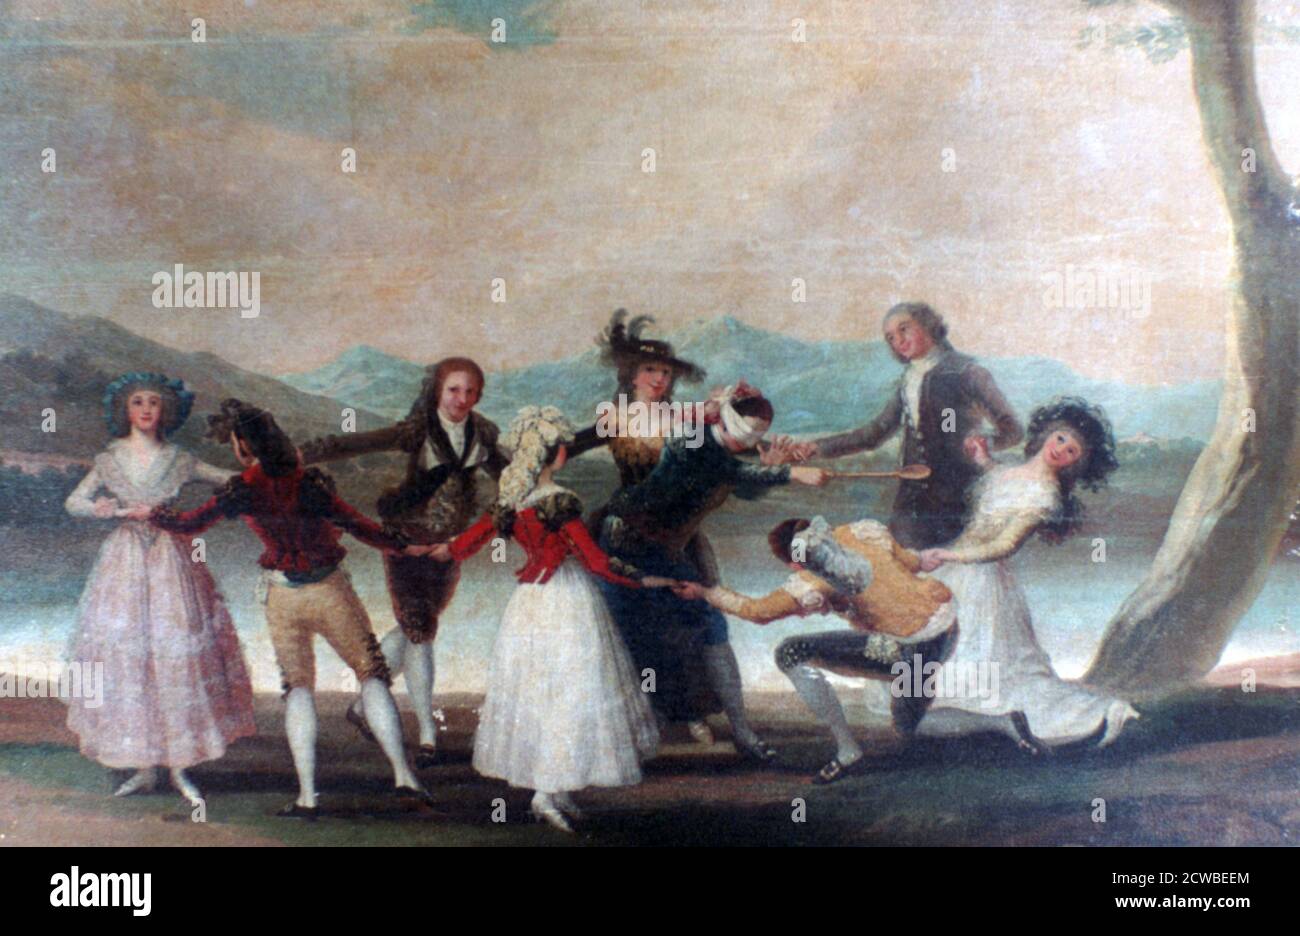 Blind Man's Buff', 1788-1789. Artiste: Francisco Goya. Francisco Goya(1746-1828) était un artiste espagnol dont les peintures, dessins et gravures reflétaient des bouleversements historiques contemporains et influençaient d'importants peintres des XIXe et XXe siècles. Banque D'Images